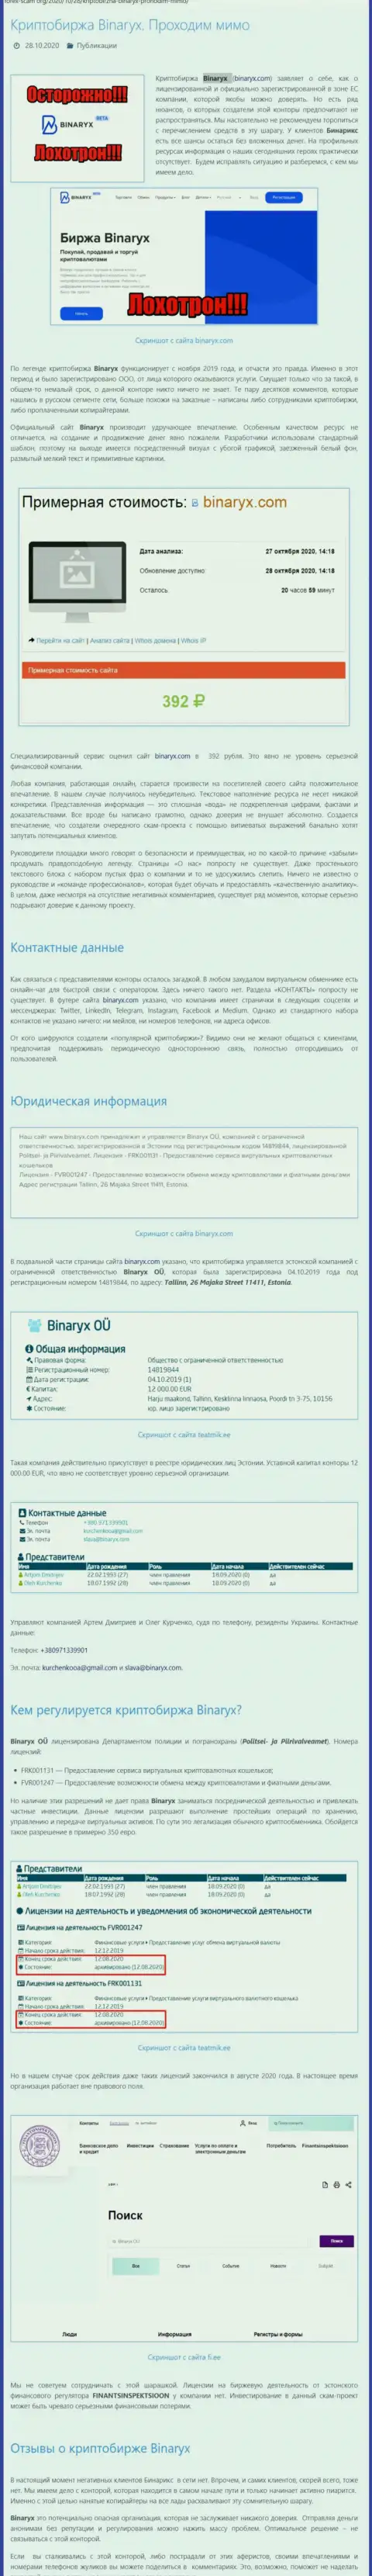 Binaryx Com это МОШЕННИКИ !!! Прикарманивание депозита гарантируют (обзор мошенничества компании)